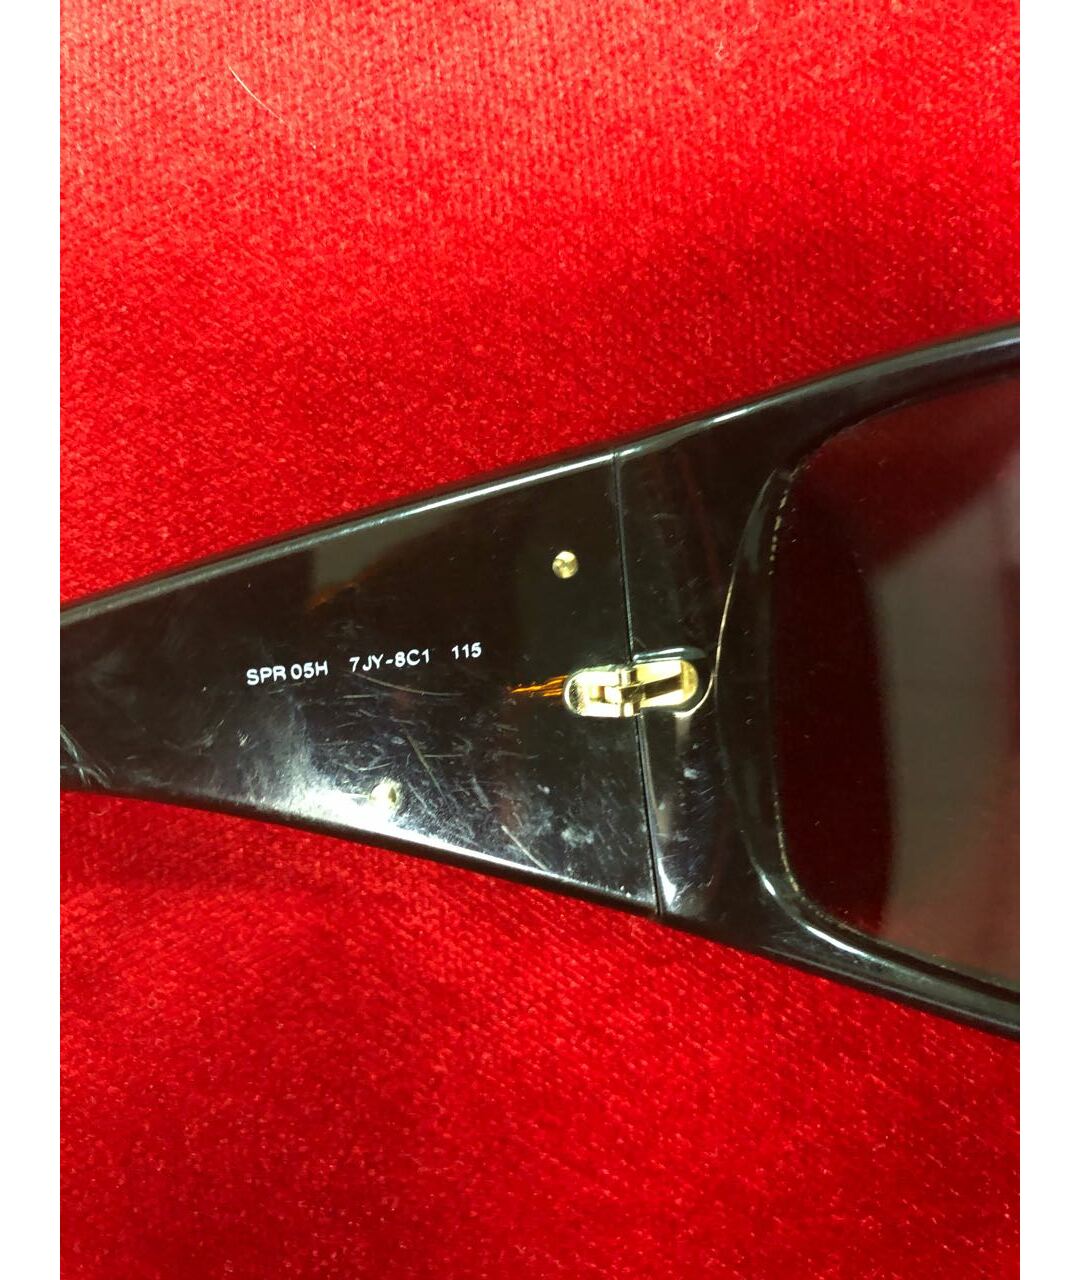 PRADA Коричневые пластиковые солнцезащитные очки, фото 5